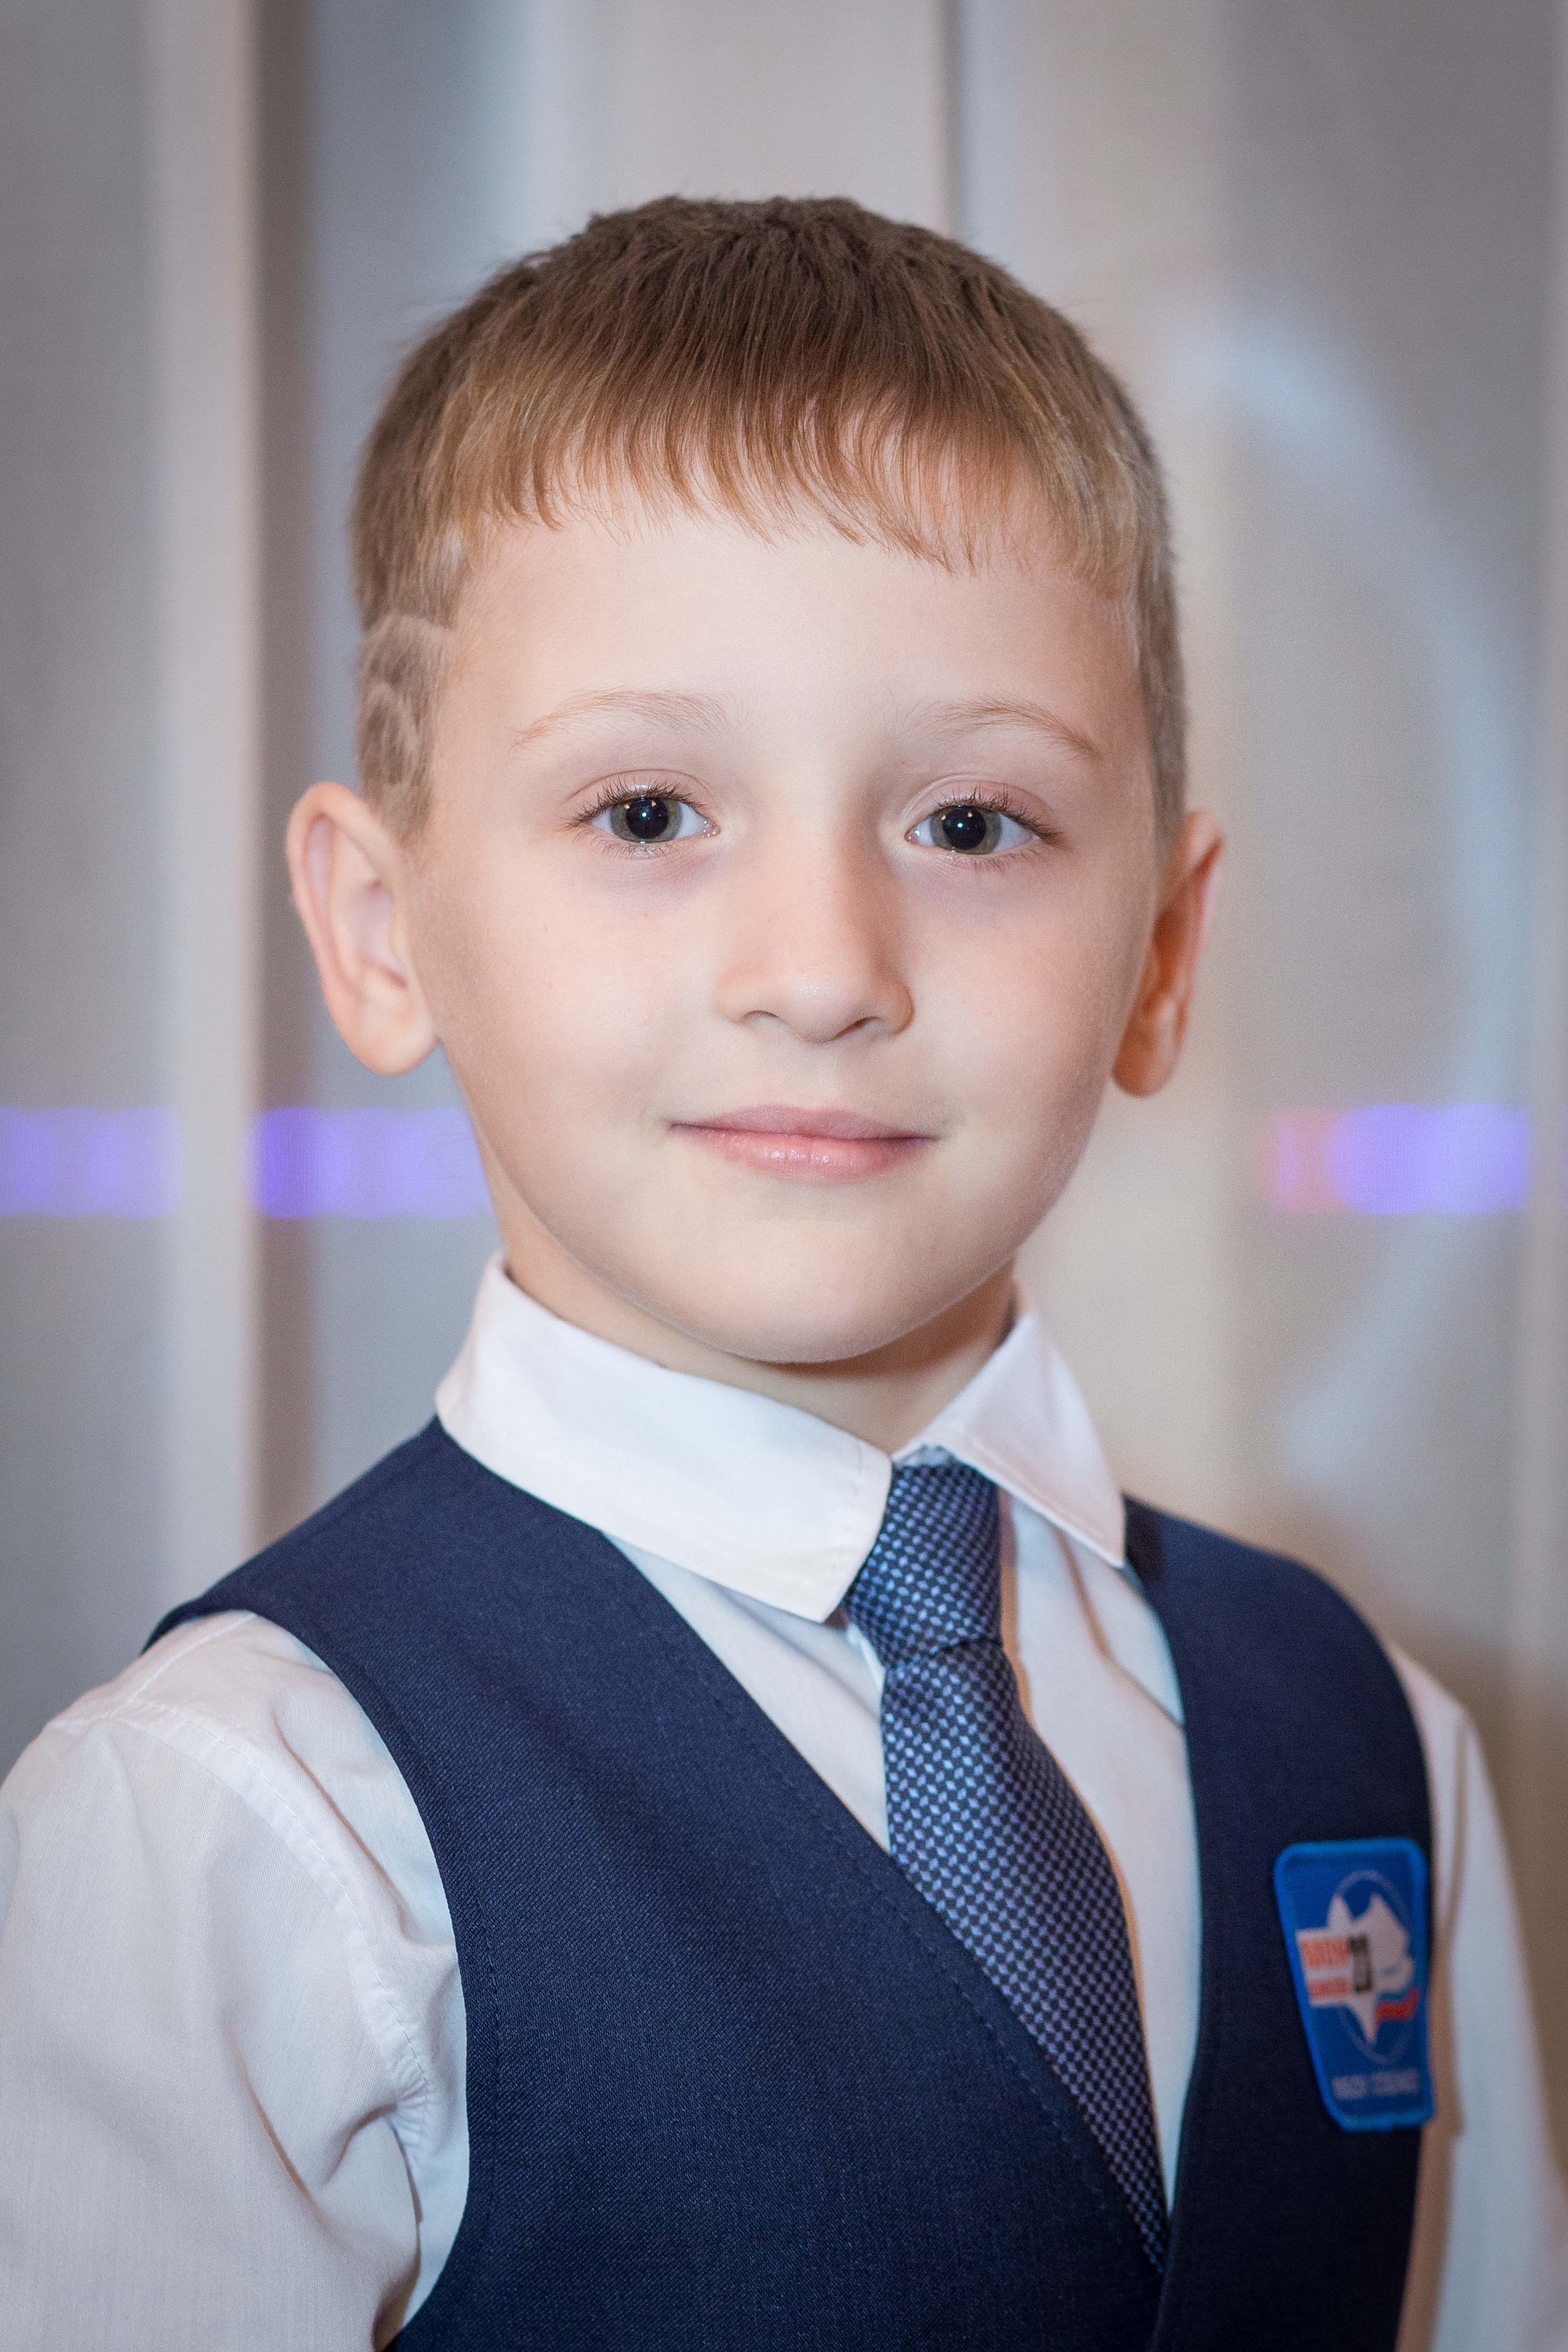 Габдрахманов Даниил, 7 лет
Занимается в спортивном комплексе «ВАДО» каратэ-до и в музыкальной школе № 24 по классу гитары.